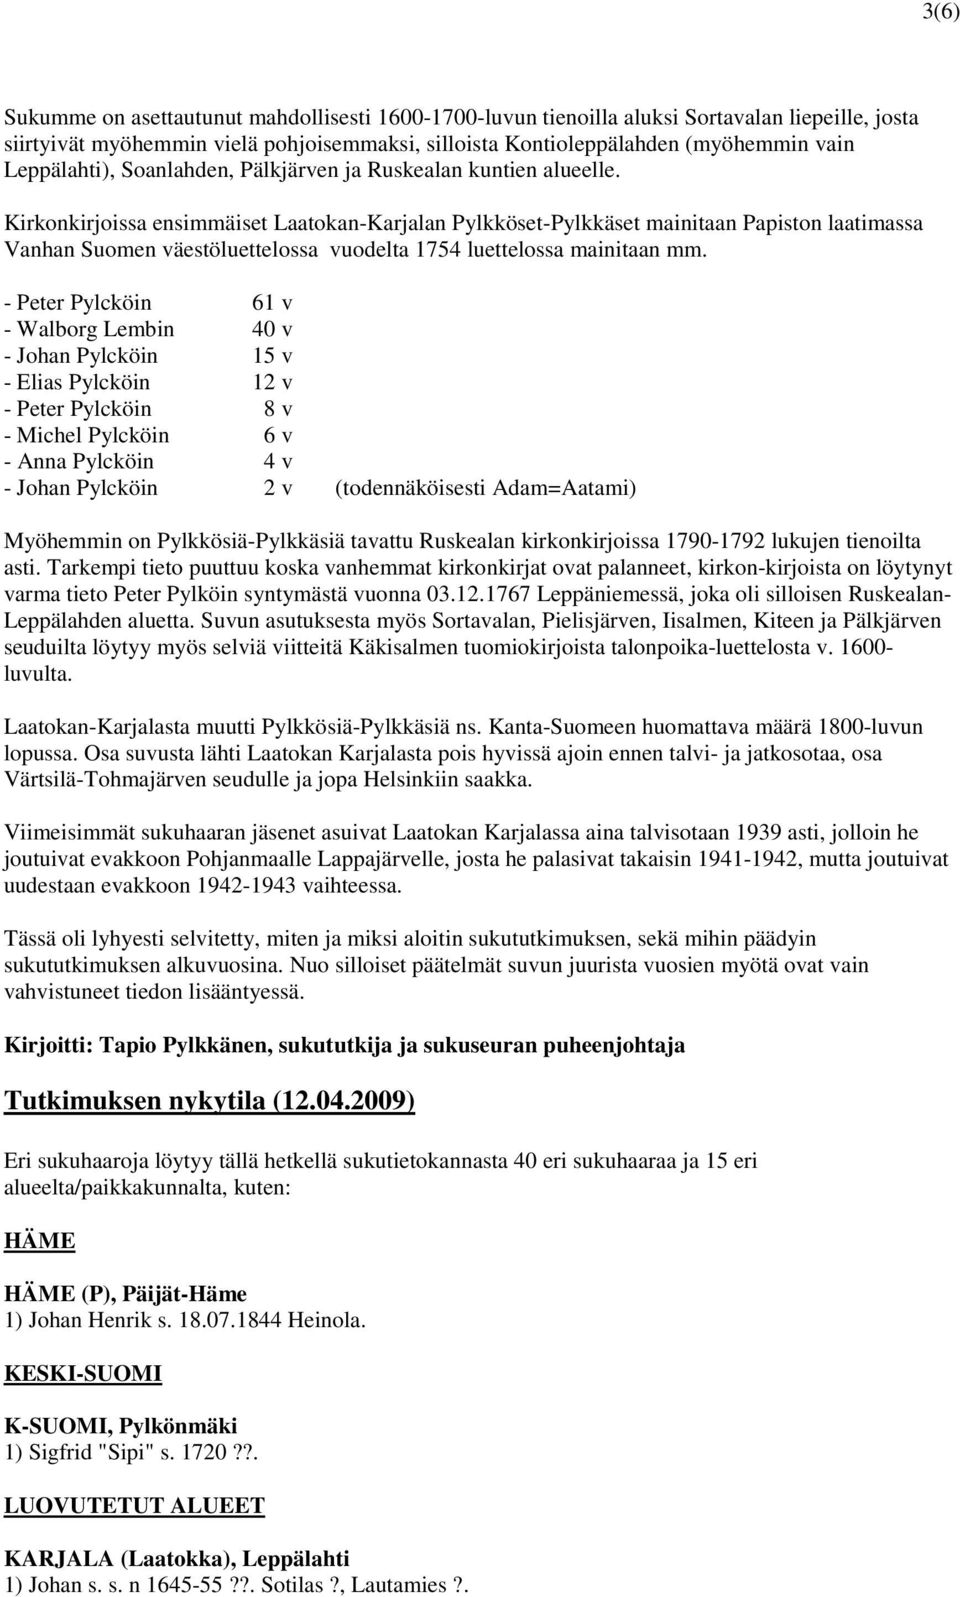 Kirkonkirjoissa ensimmäiset Laatokan-Karjalan Pylkköset-Pylkkäset mainitaan Papiston laatimassa Vanhan Suomen väestöluettelossa vuodelta 1754 luettelossa mainitaan mm.